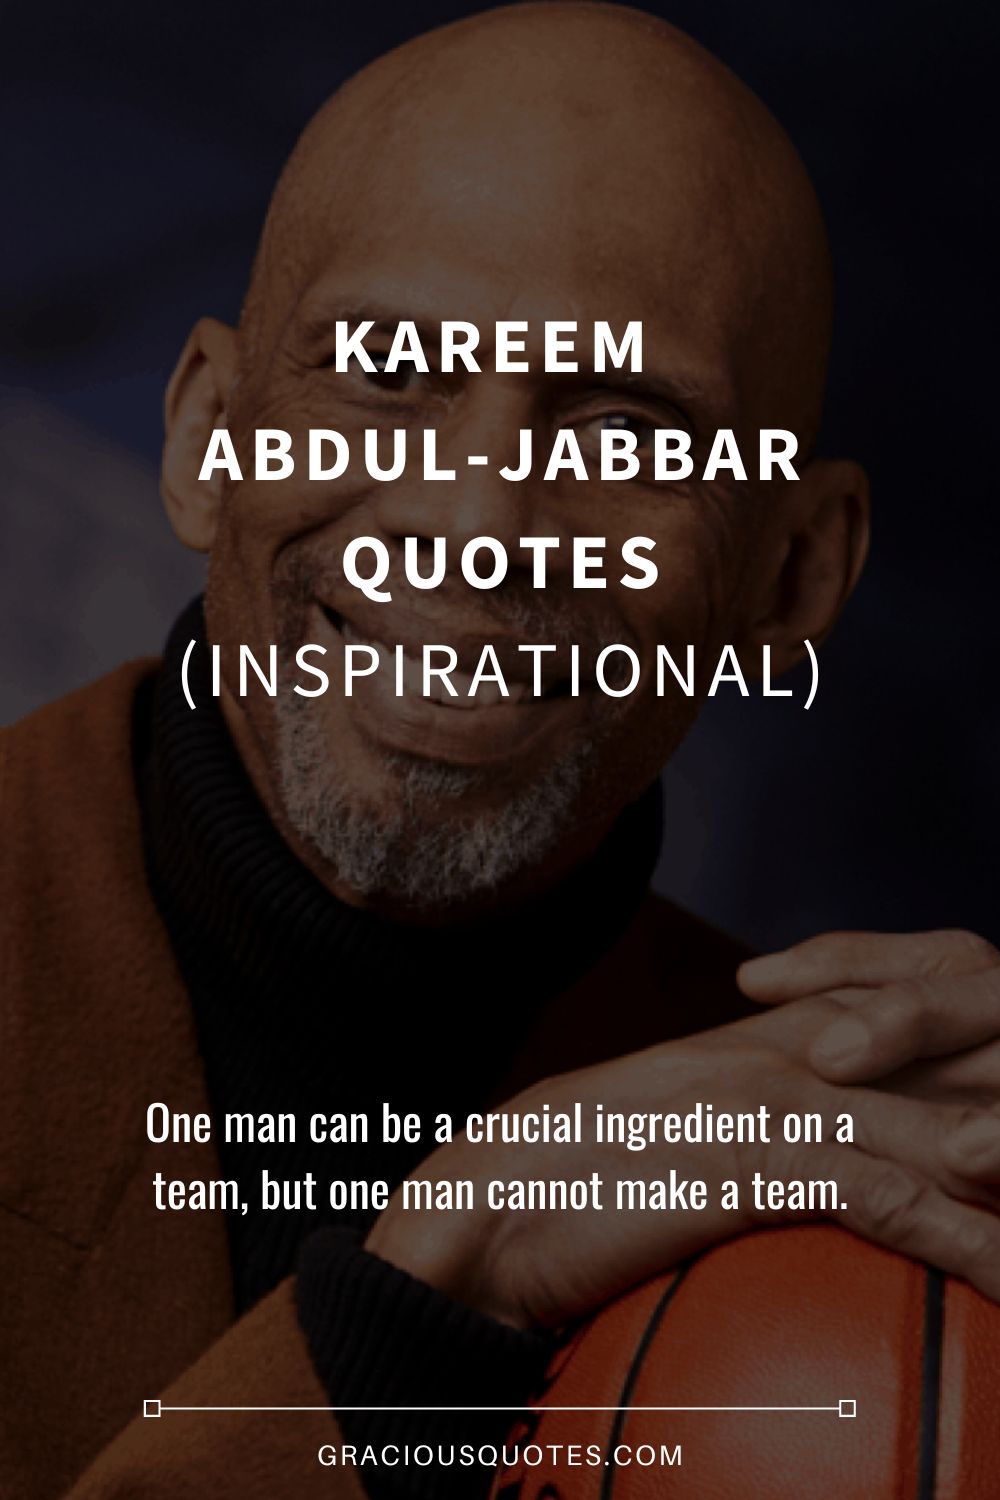 Kareem Abdul-Jabbar Quotes (INSPIRATIONAL) - Gracious Quotes